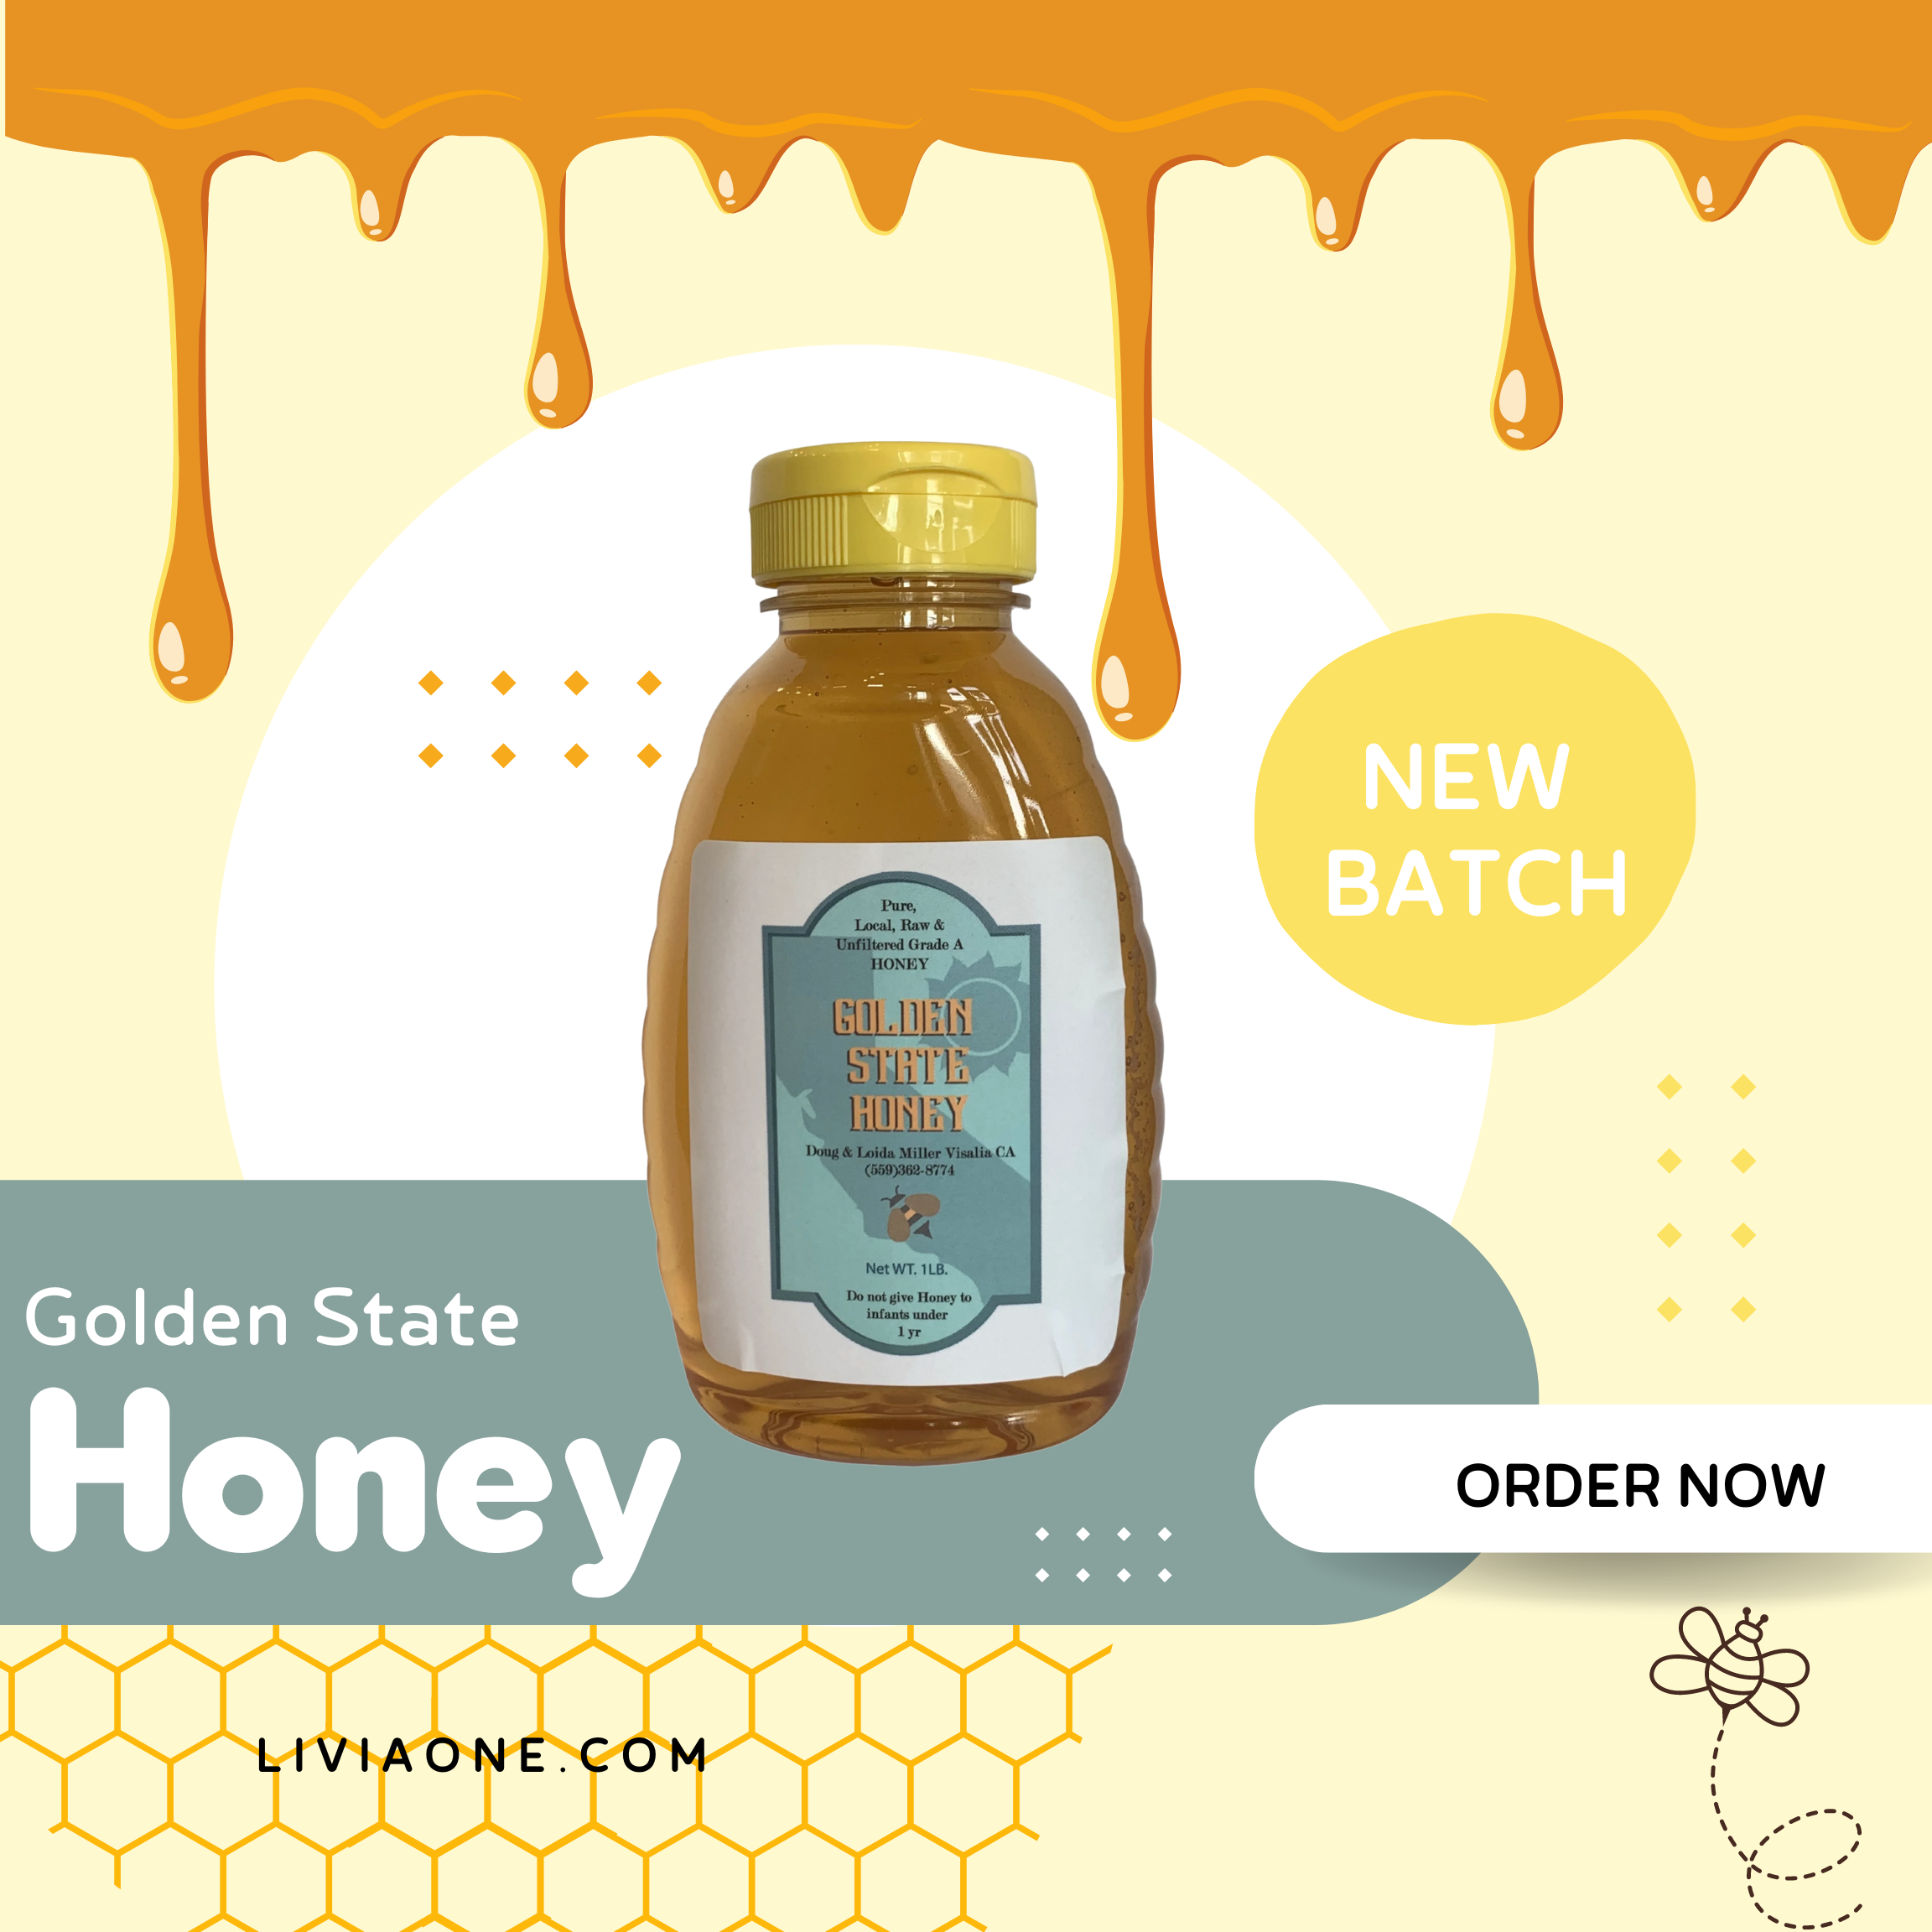 All Natural Golden State Honey - Orange Blossom Honey from California Orange Groves